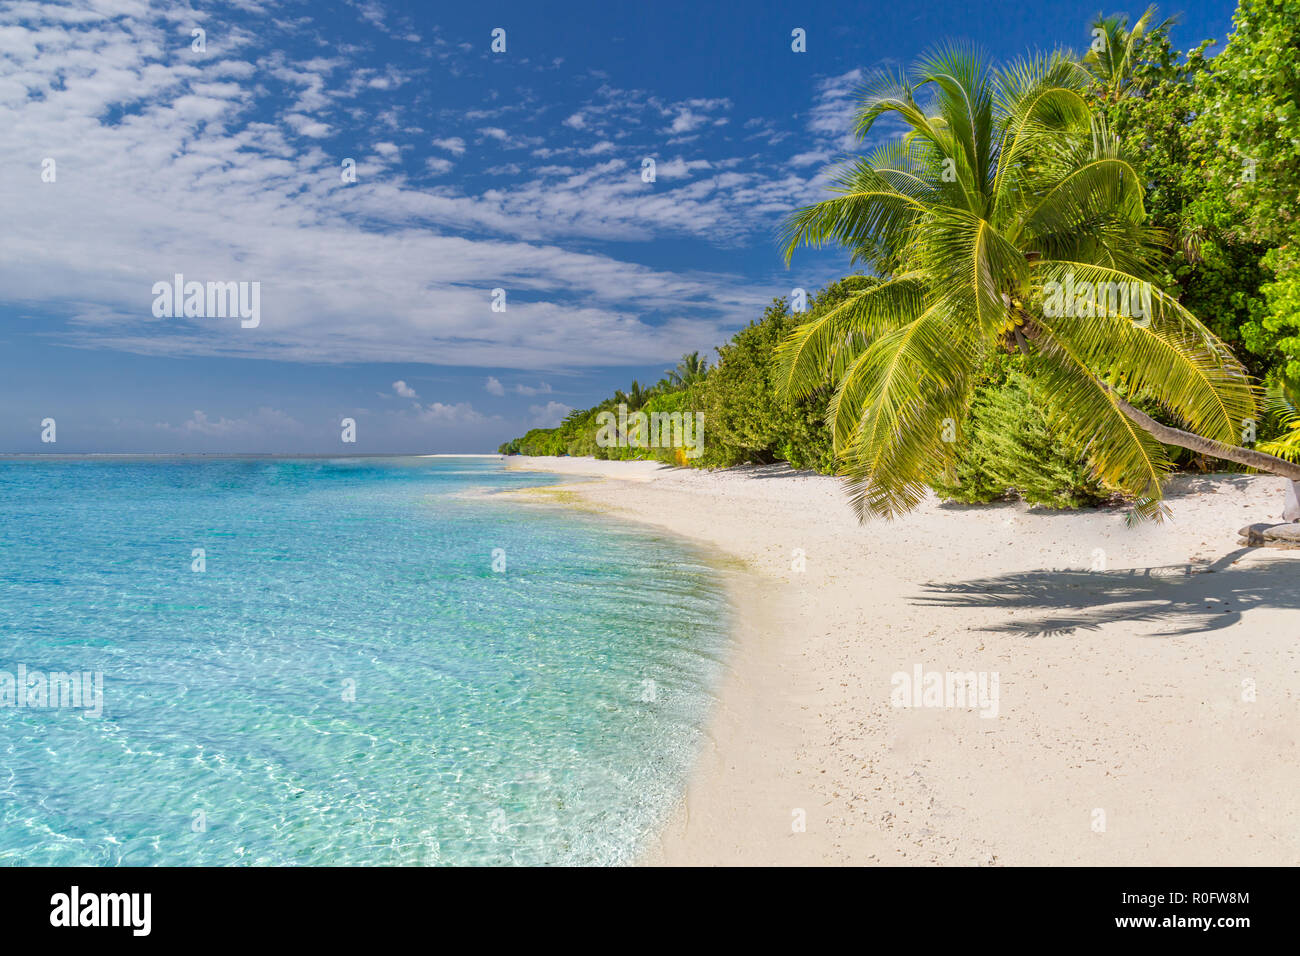 Schöner Strand, Palmen in der Nähe von blauen Meer, tropische Landschaft. Inspirierende exotische Hintergrund Stockfoto